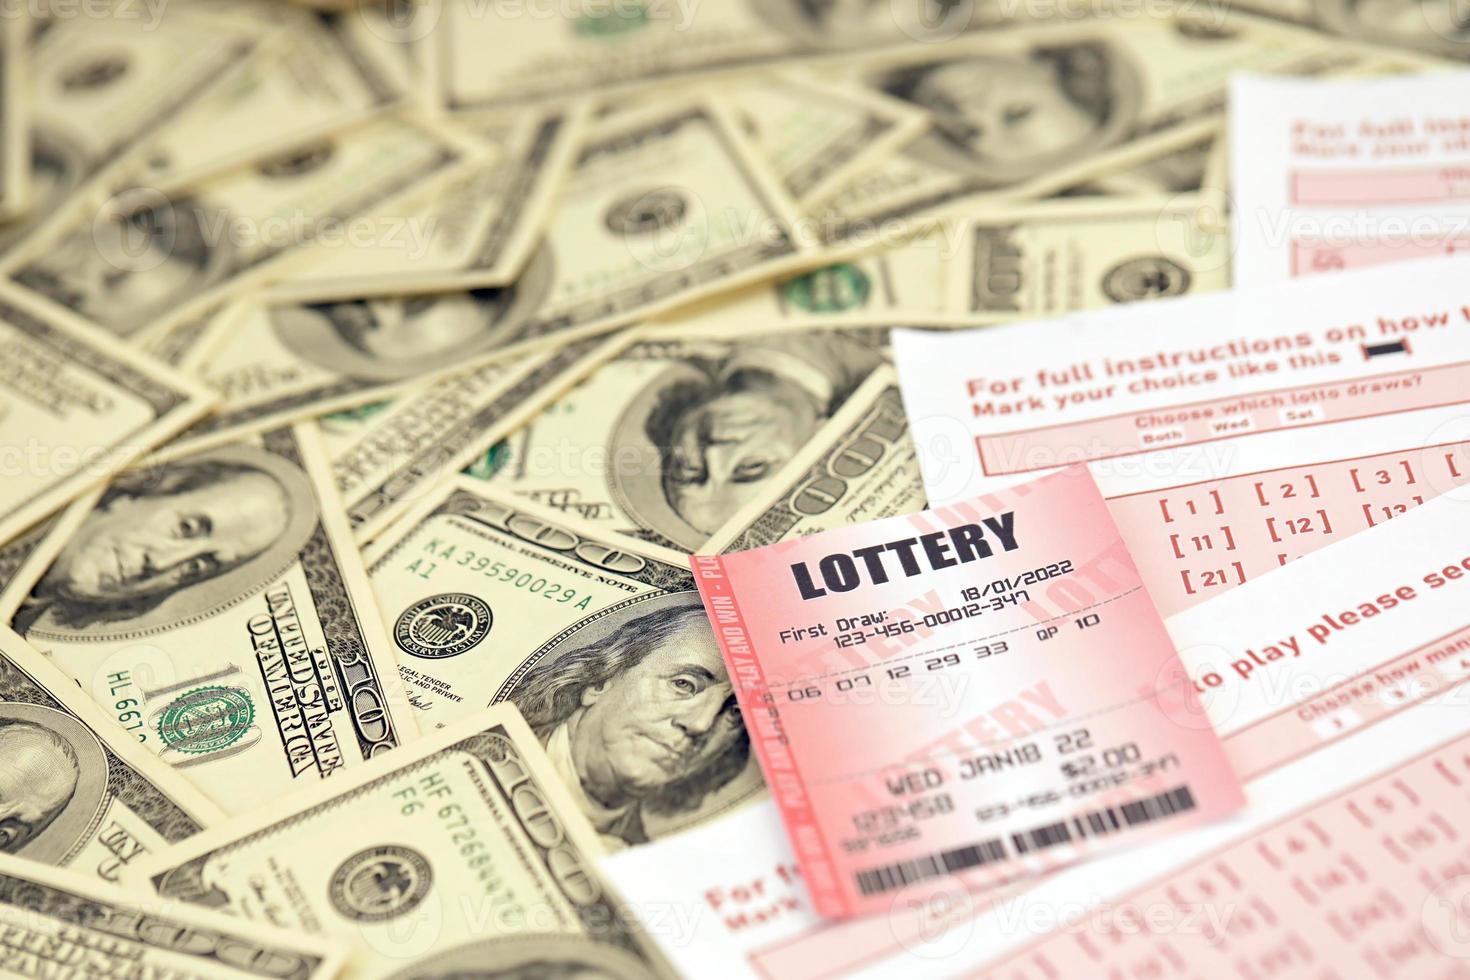 el billete de lotería rojo se encuentra en hojas de juego rosas con números para marcar en una gran cantidad de billetes de cien dólares. concepto de juego de lotería o adicción al juego. de cerca foto